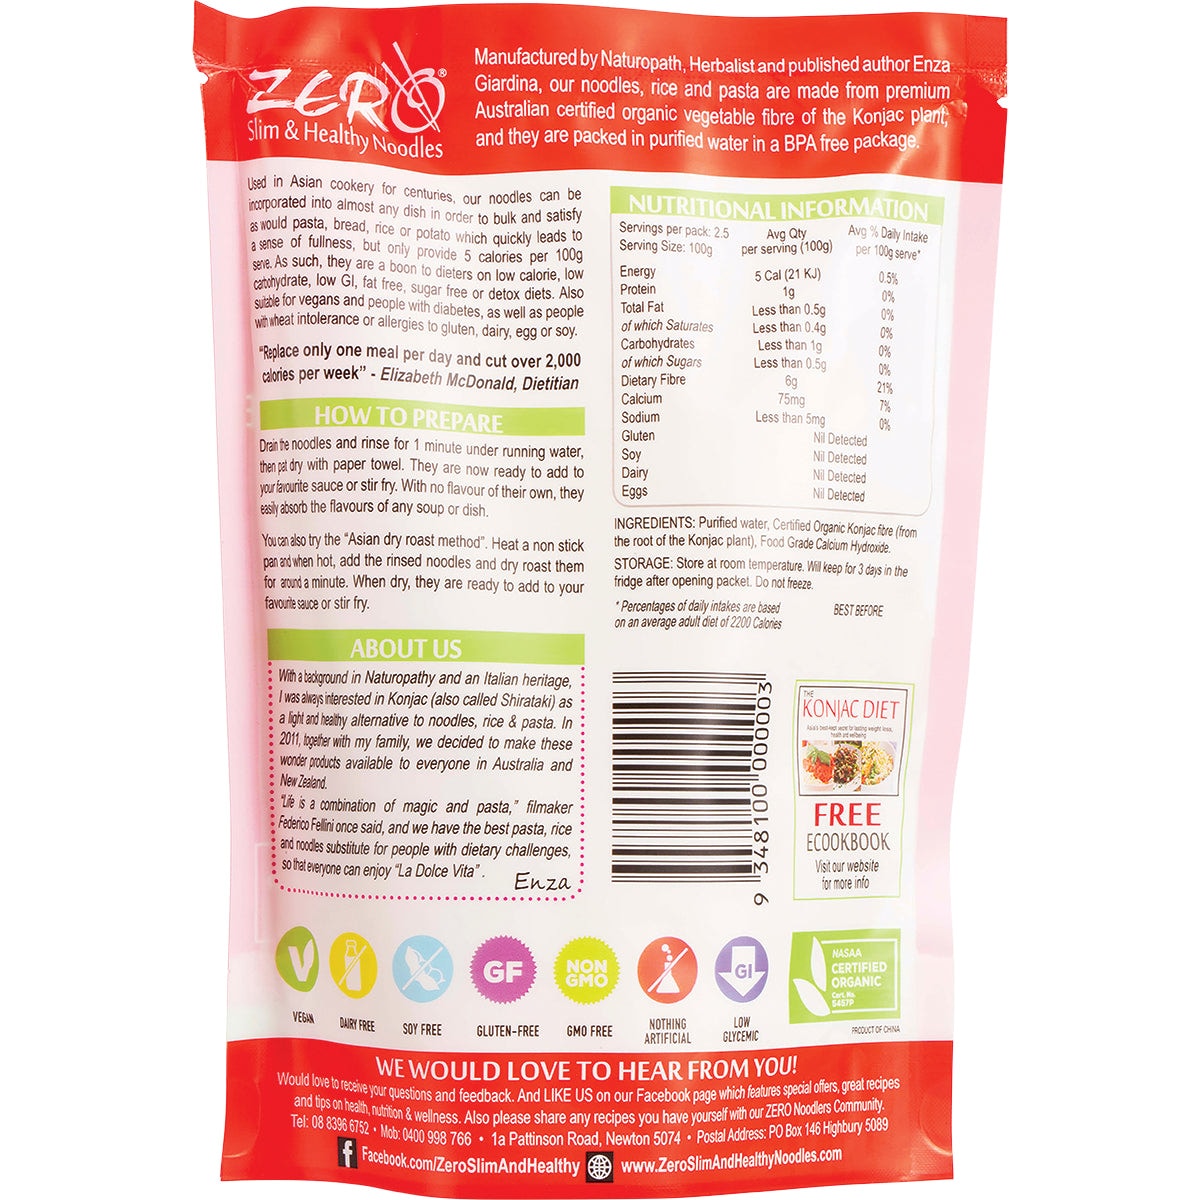 Zero Slim & Healthy Certified Organic Konjac Rice Style 400g